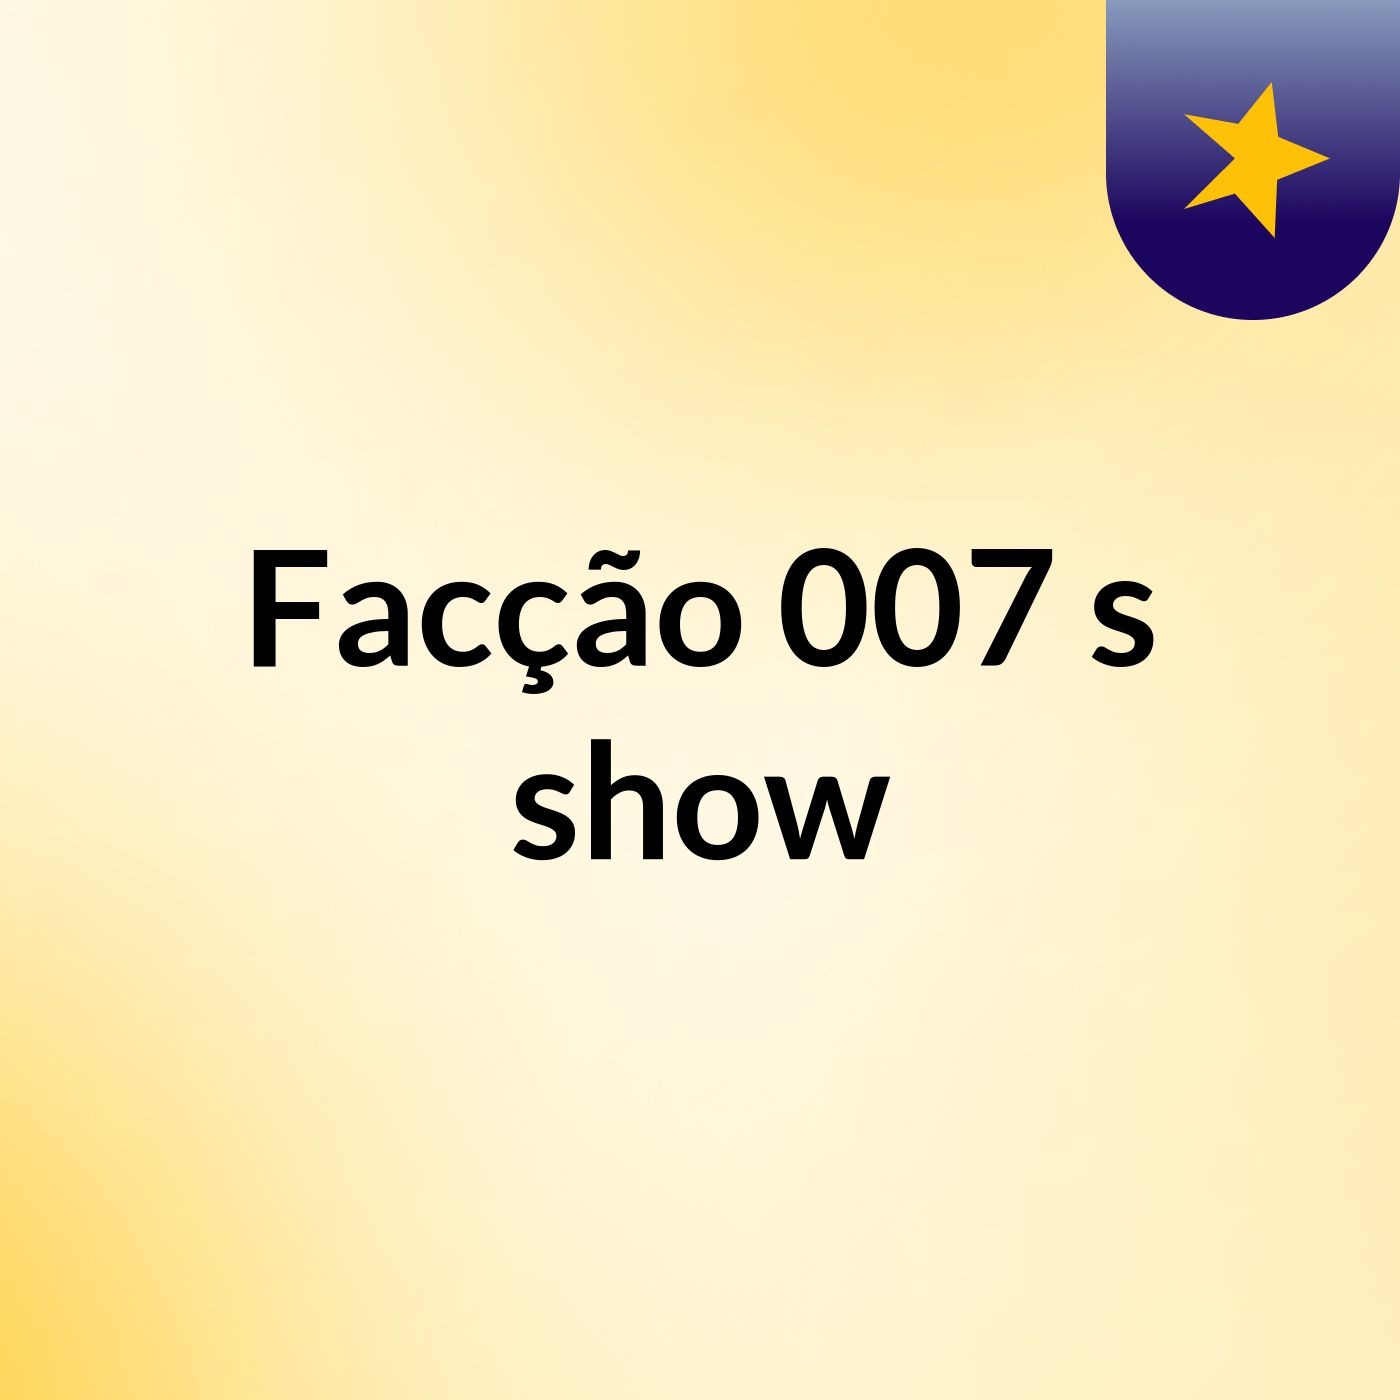 Facção 007's show